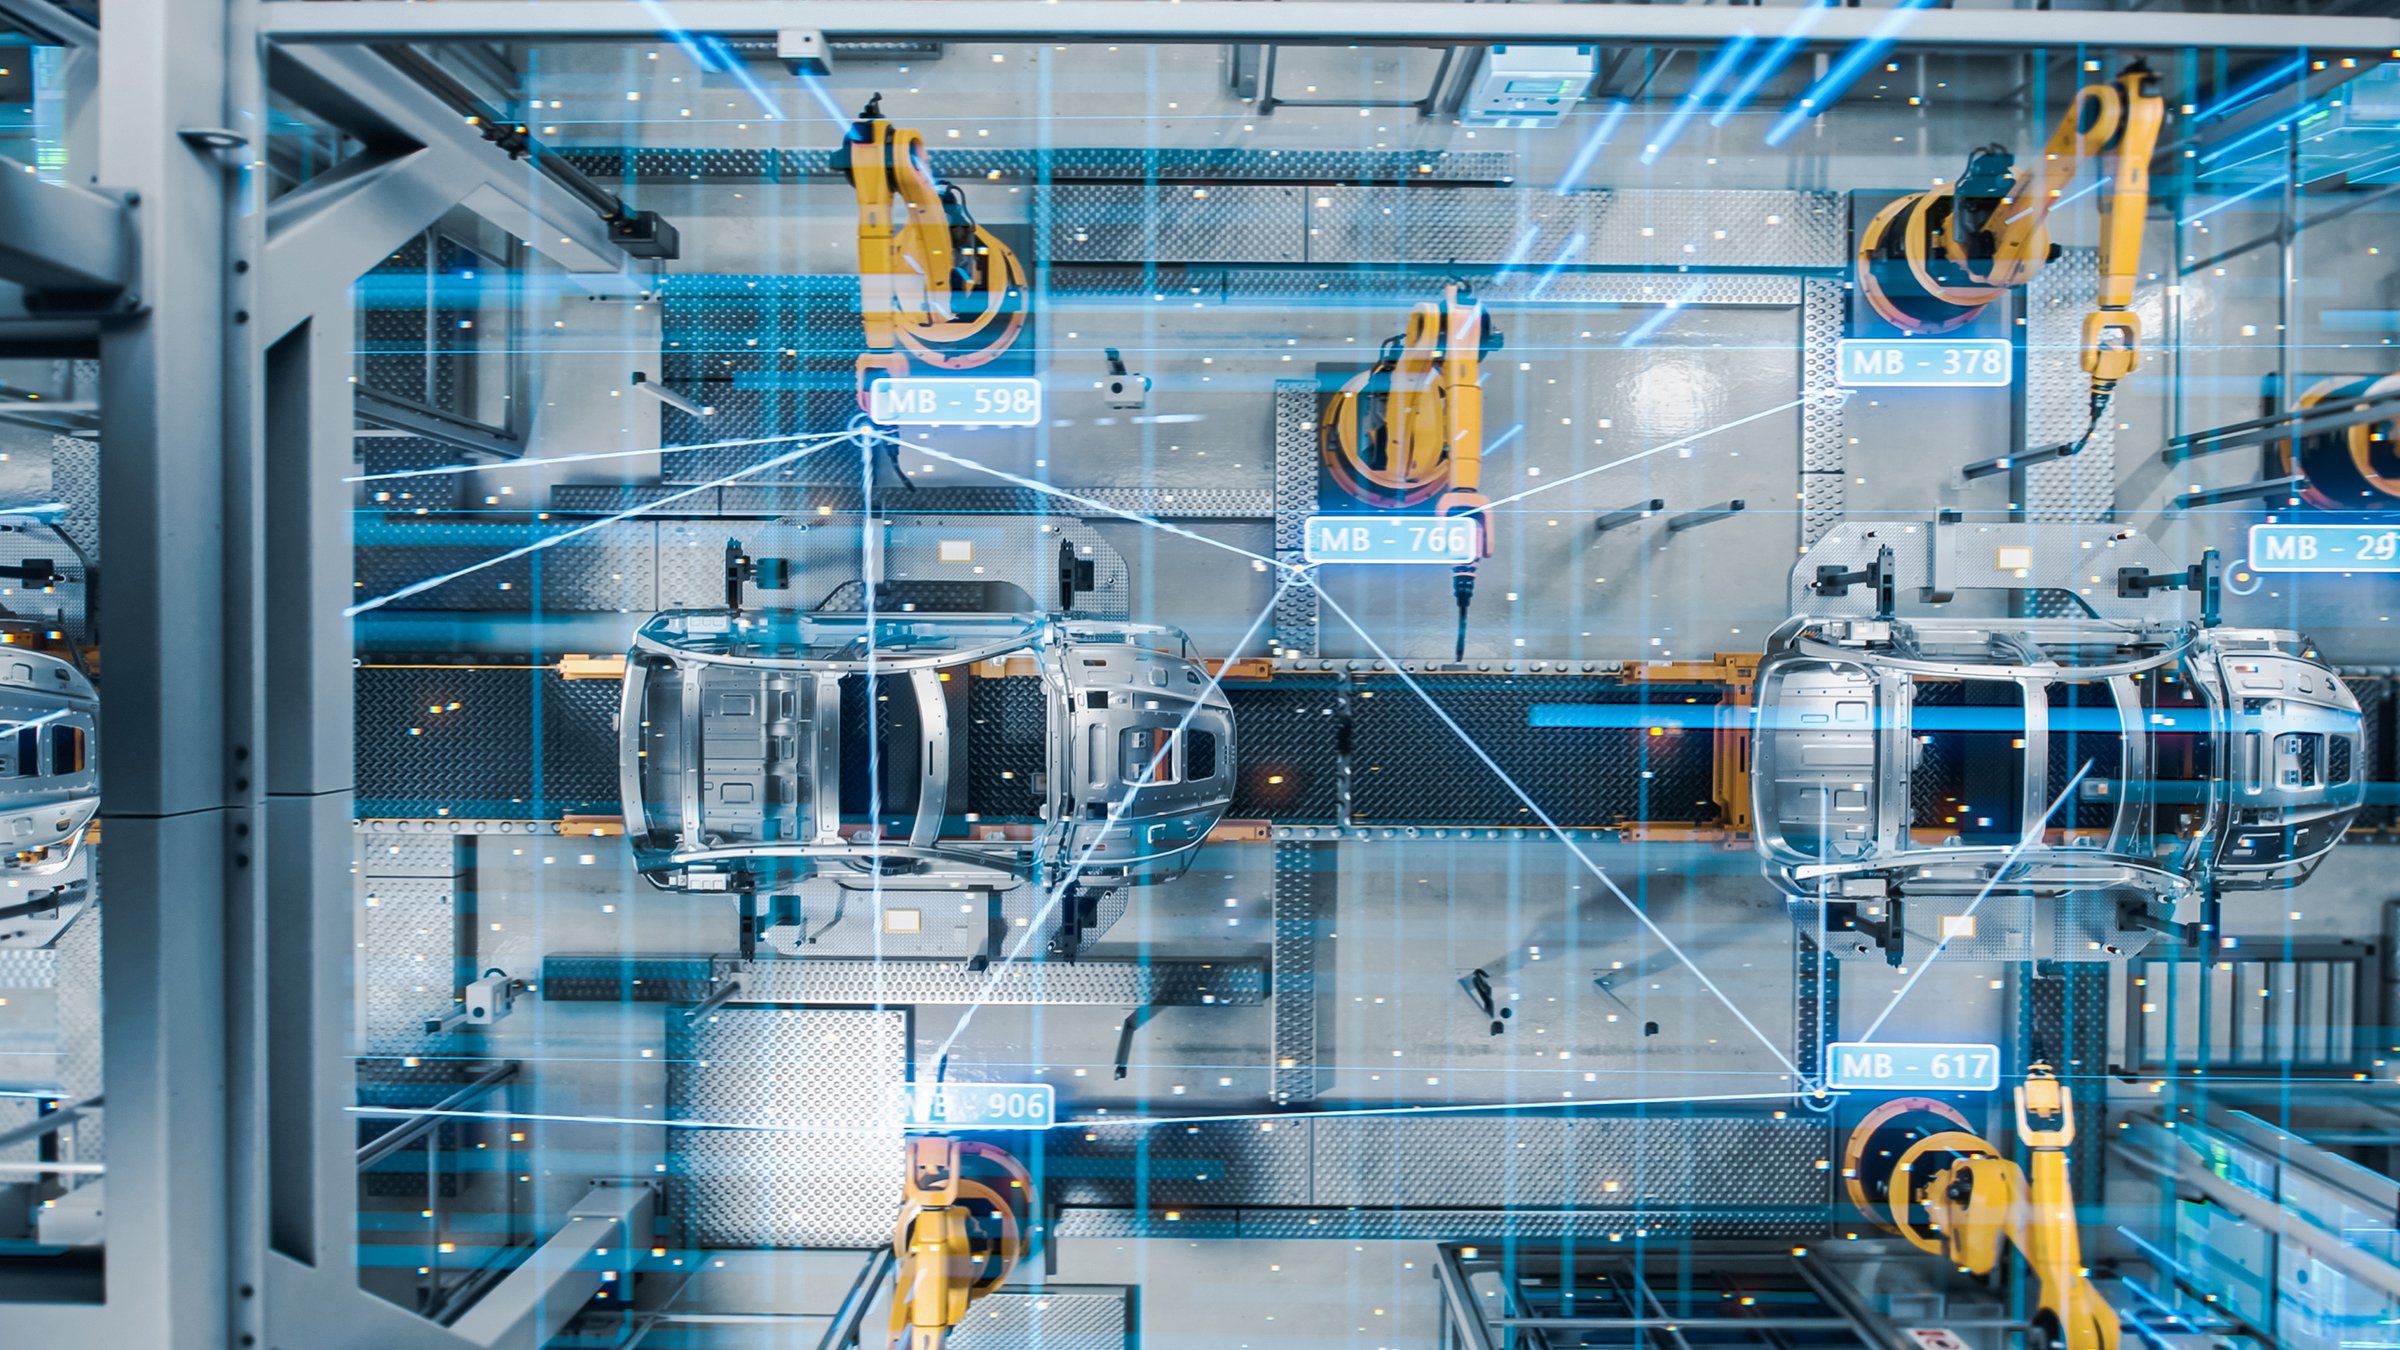 Vue aérienne d'une chaîne d'assemblage automatisée avec des robots fabriquant des voitures électriques de haute technologie